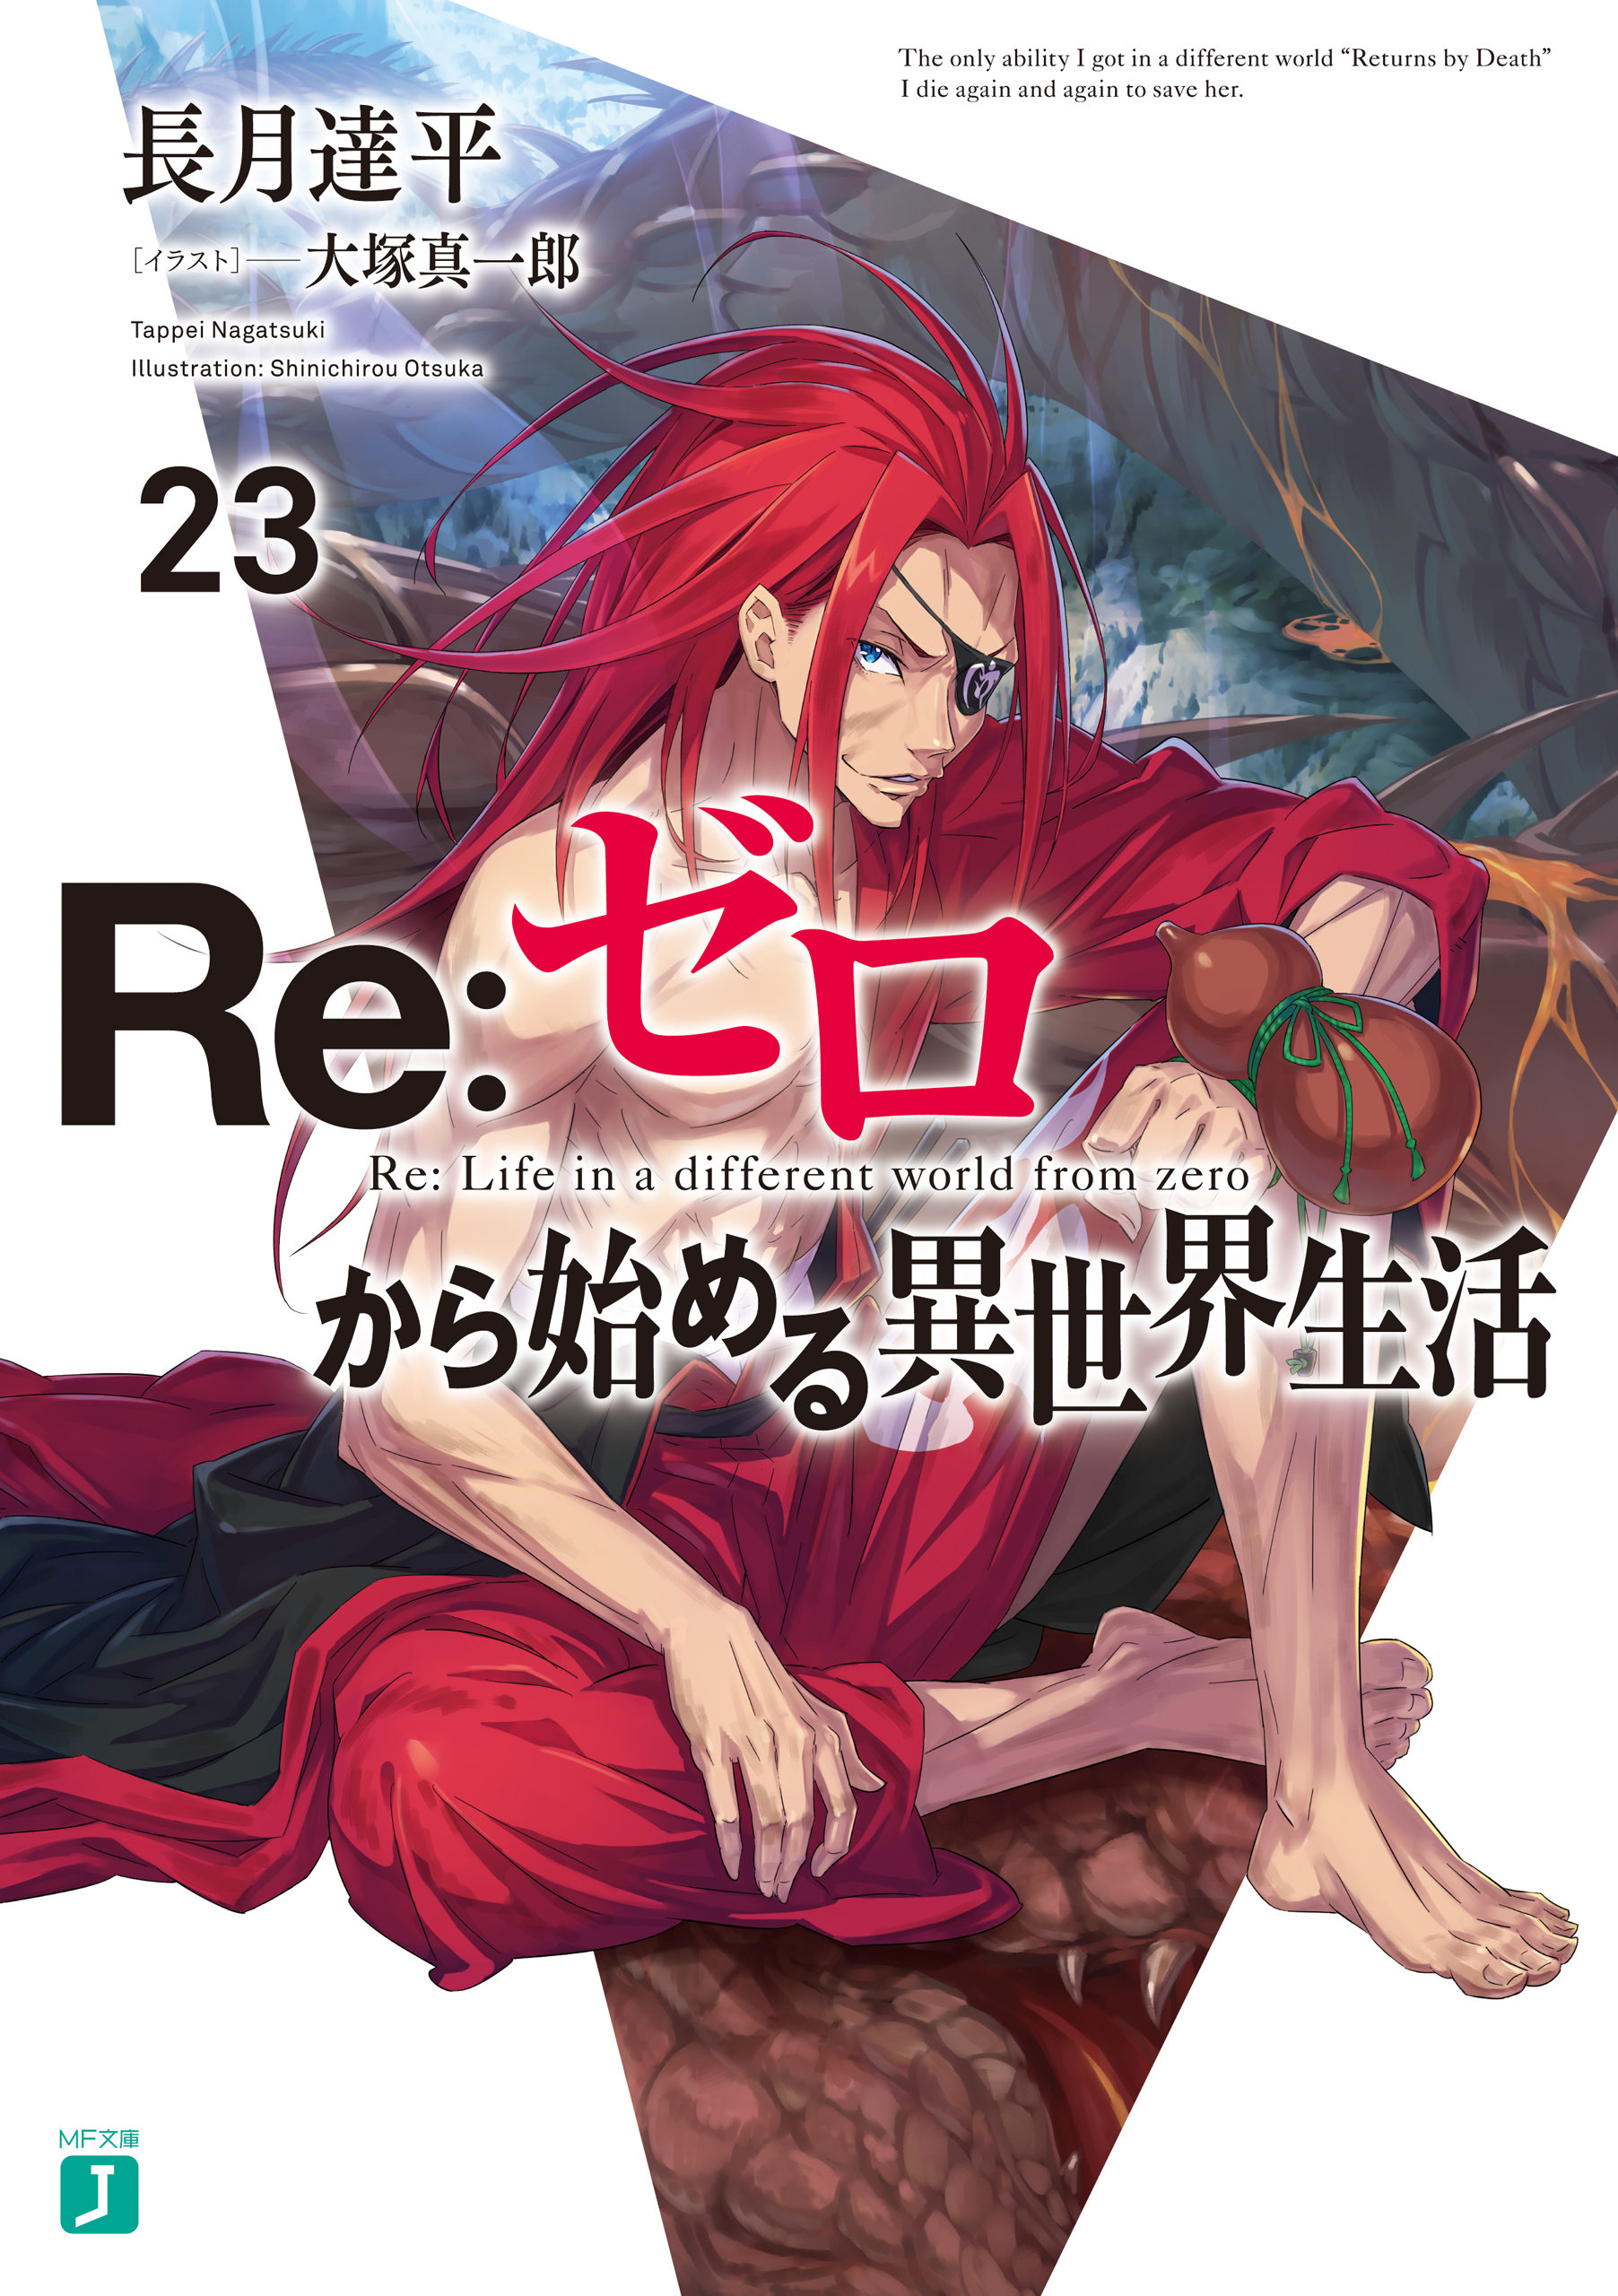 October 2023 Manga / Light Novel / Book Releases